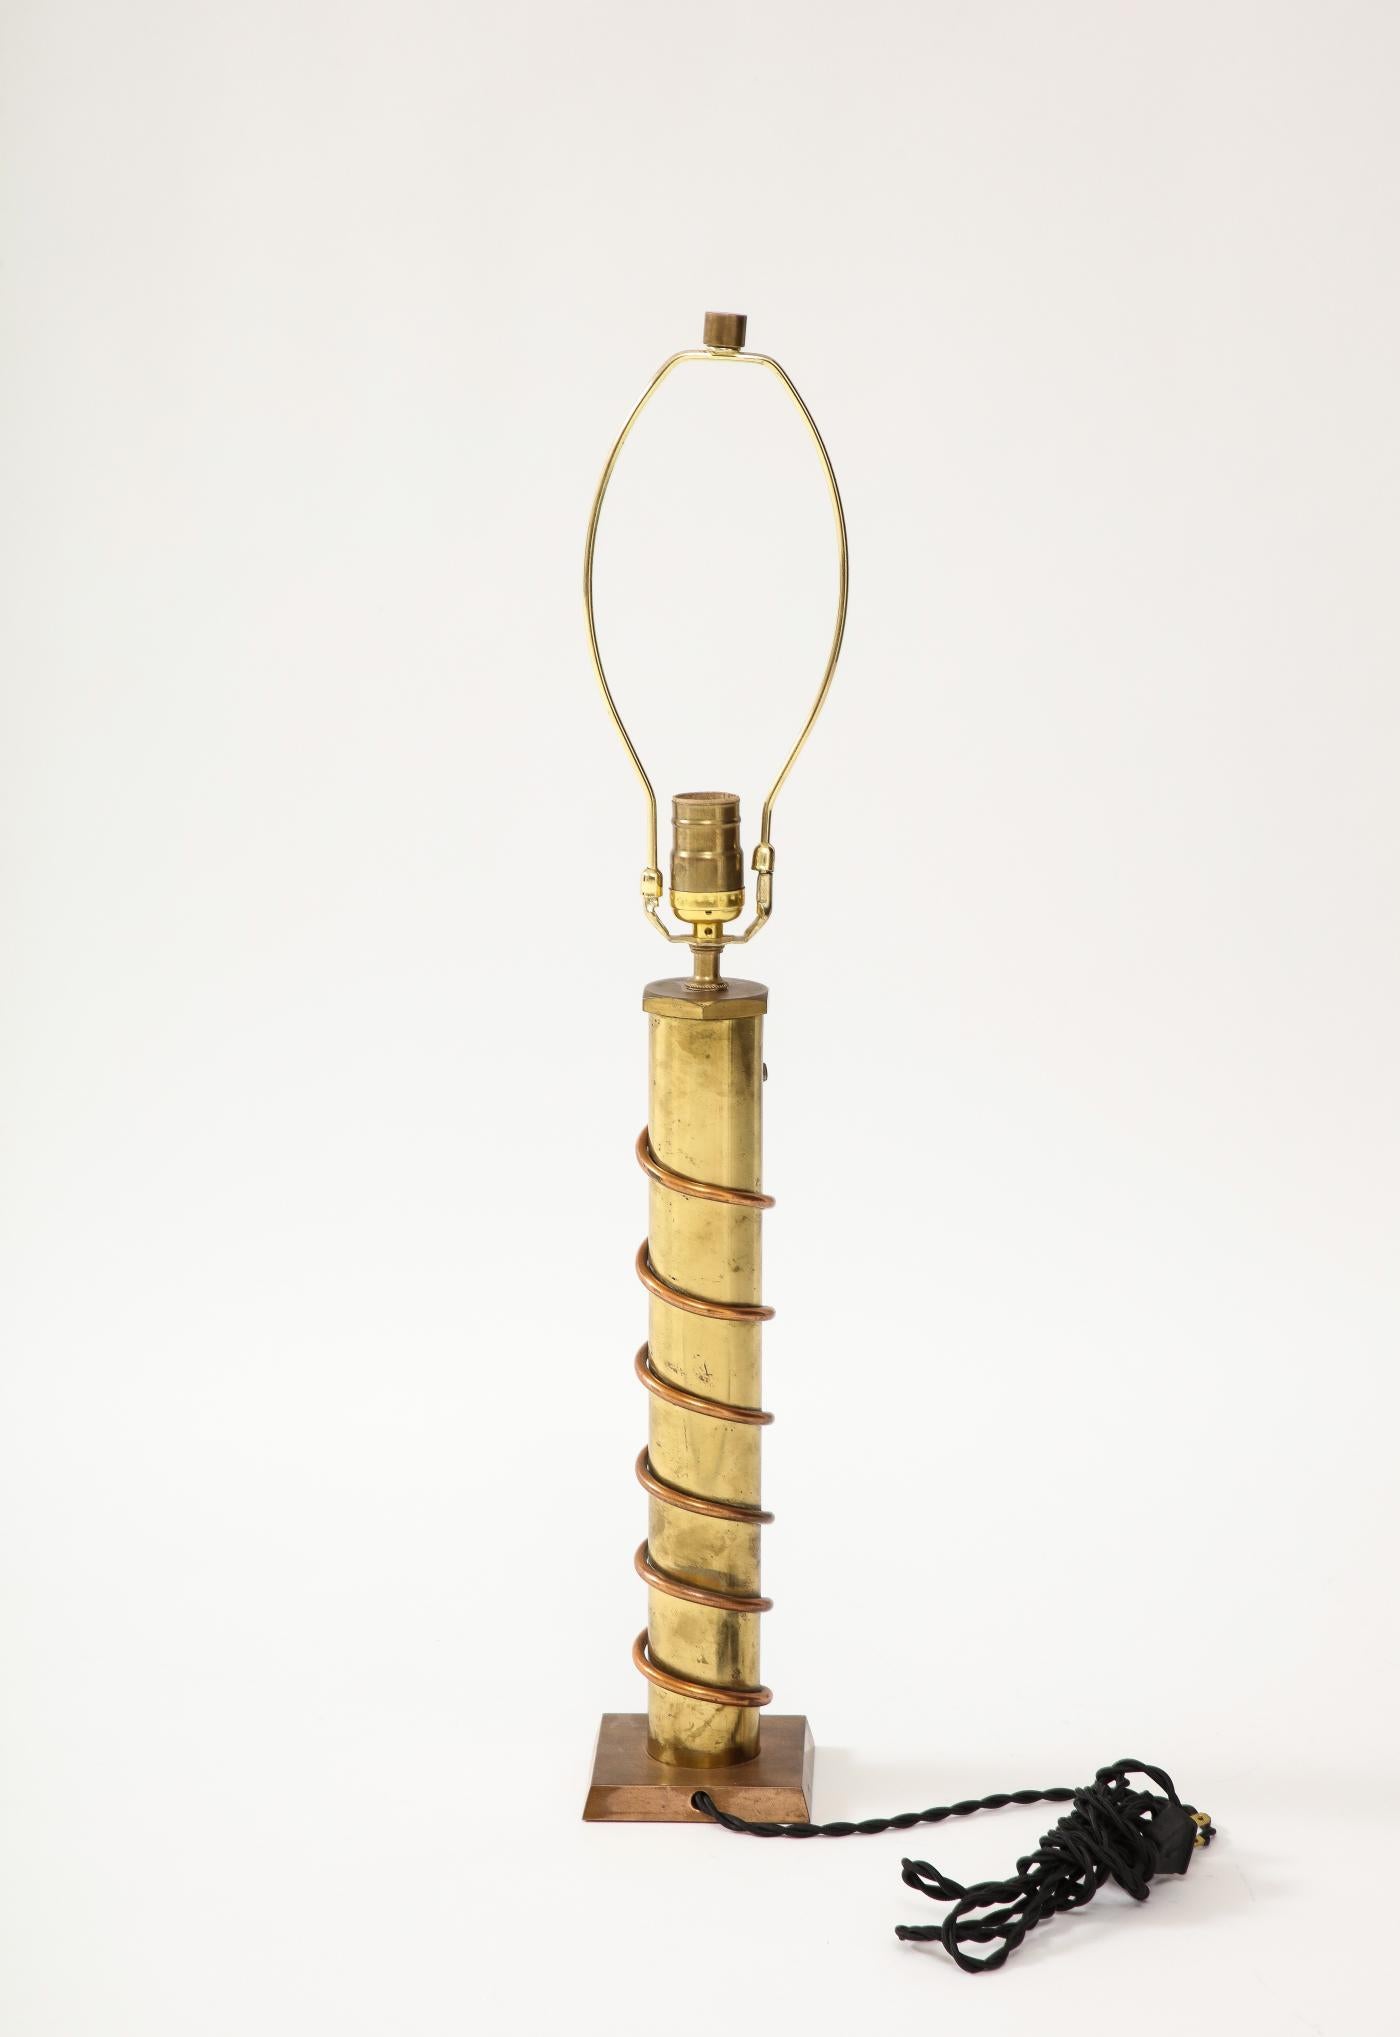 Lampe de table en cuivre et laiton, France, c. 1940

Lampe de table ludique en cuivre et laiton, magnifiquement patinée.
Nouvellement recâblé avec un cordon de soie torsadé noir.


